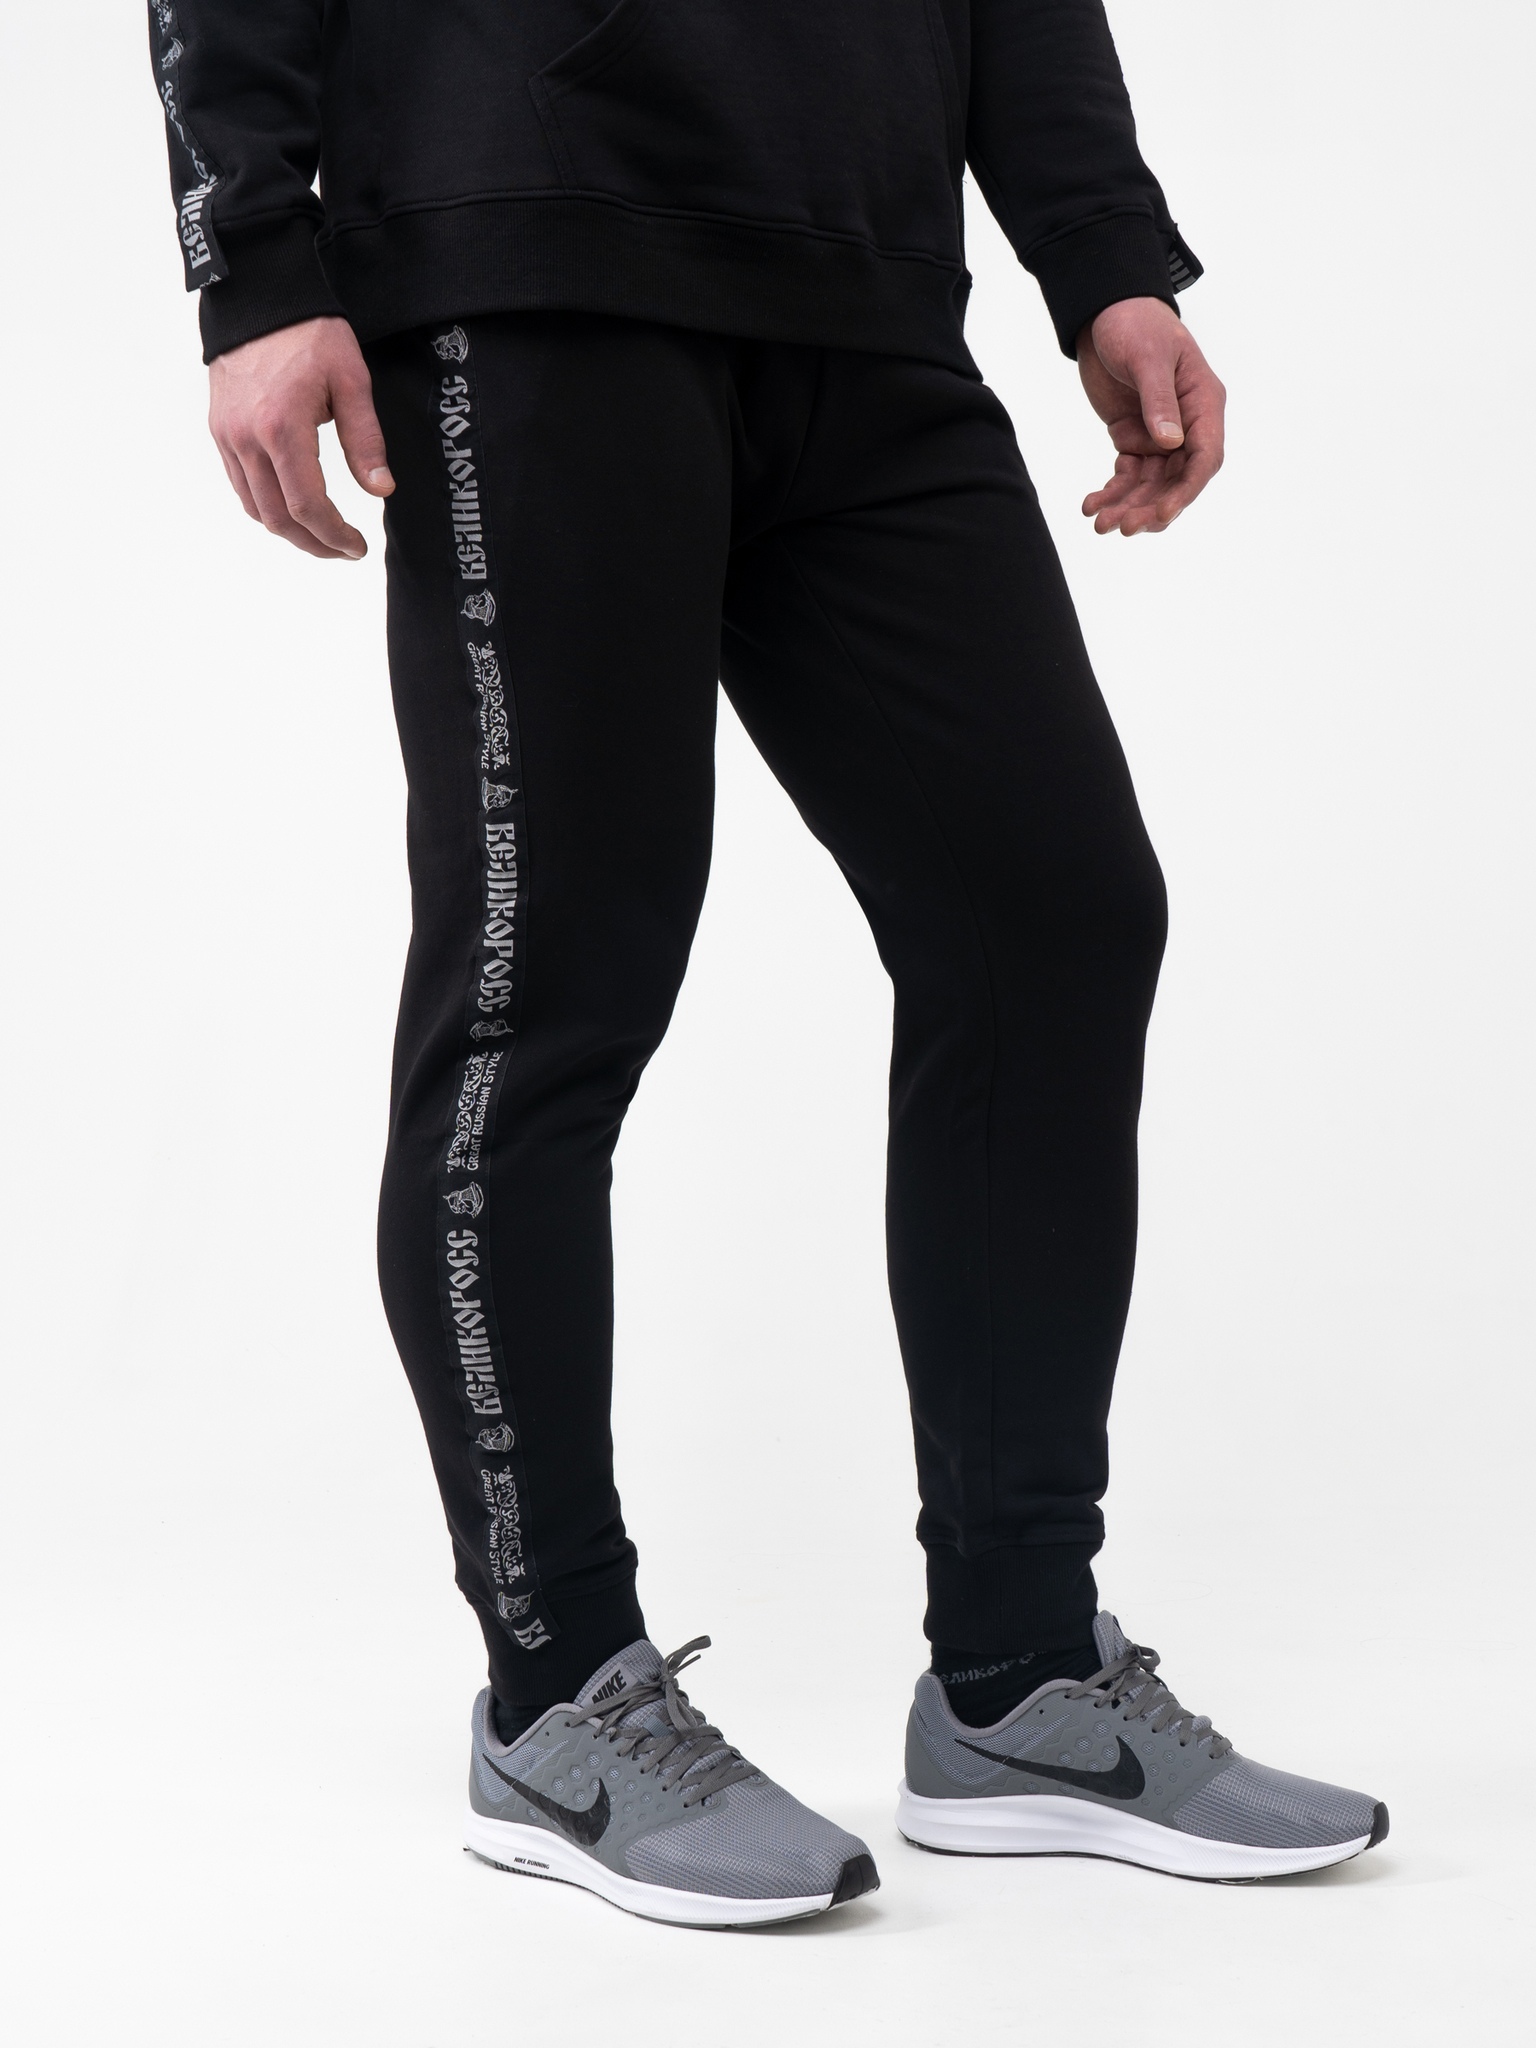 фото Спортивные брюки мужские великоросс bm черные 50 ru